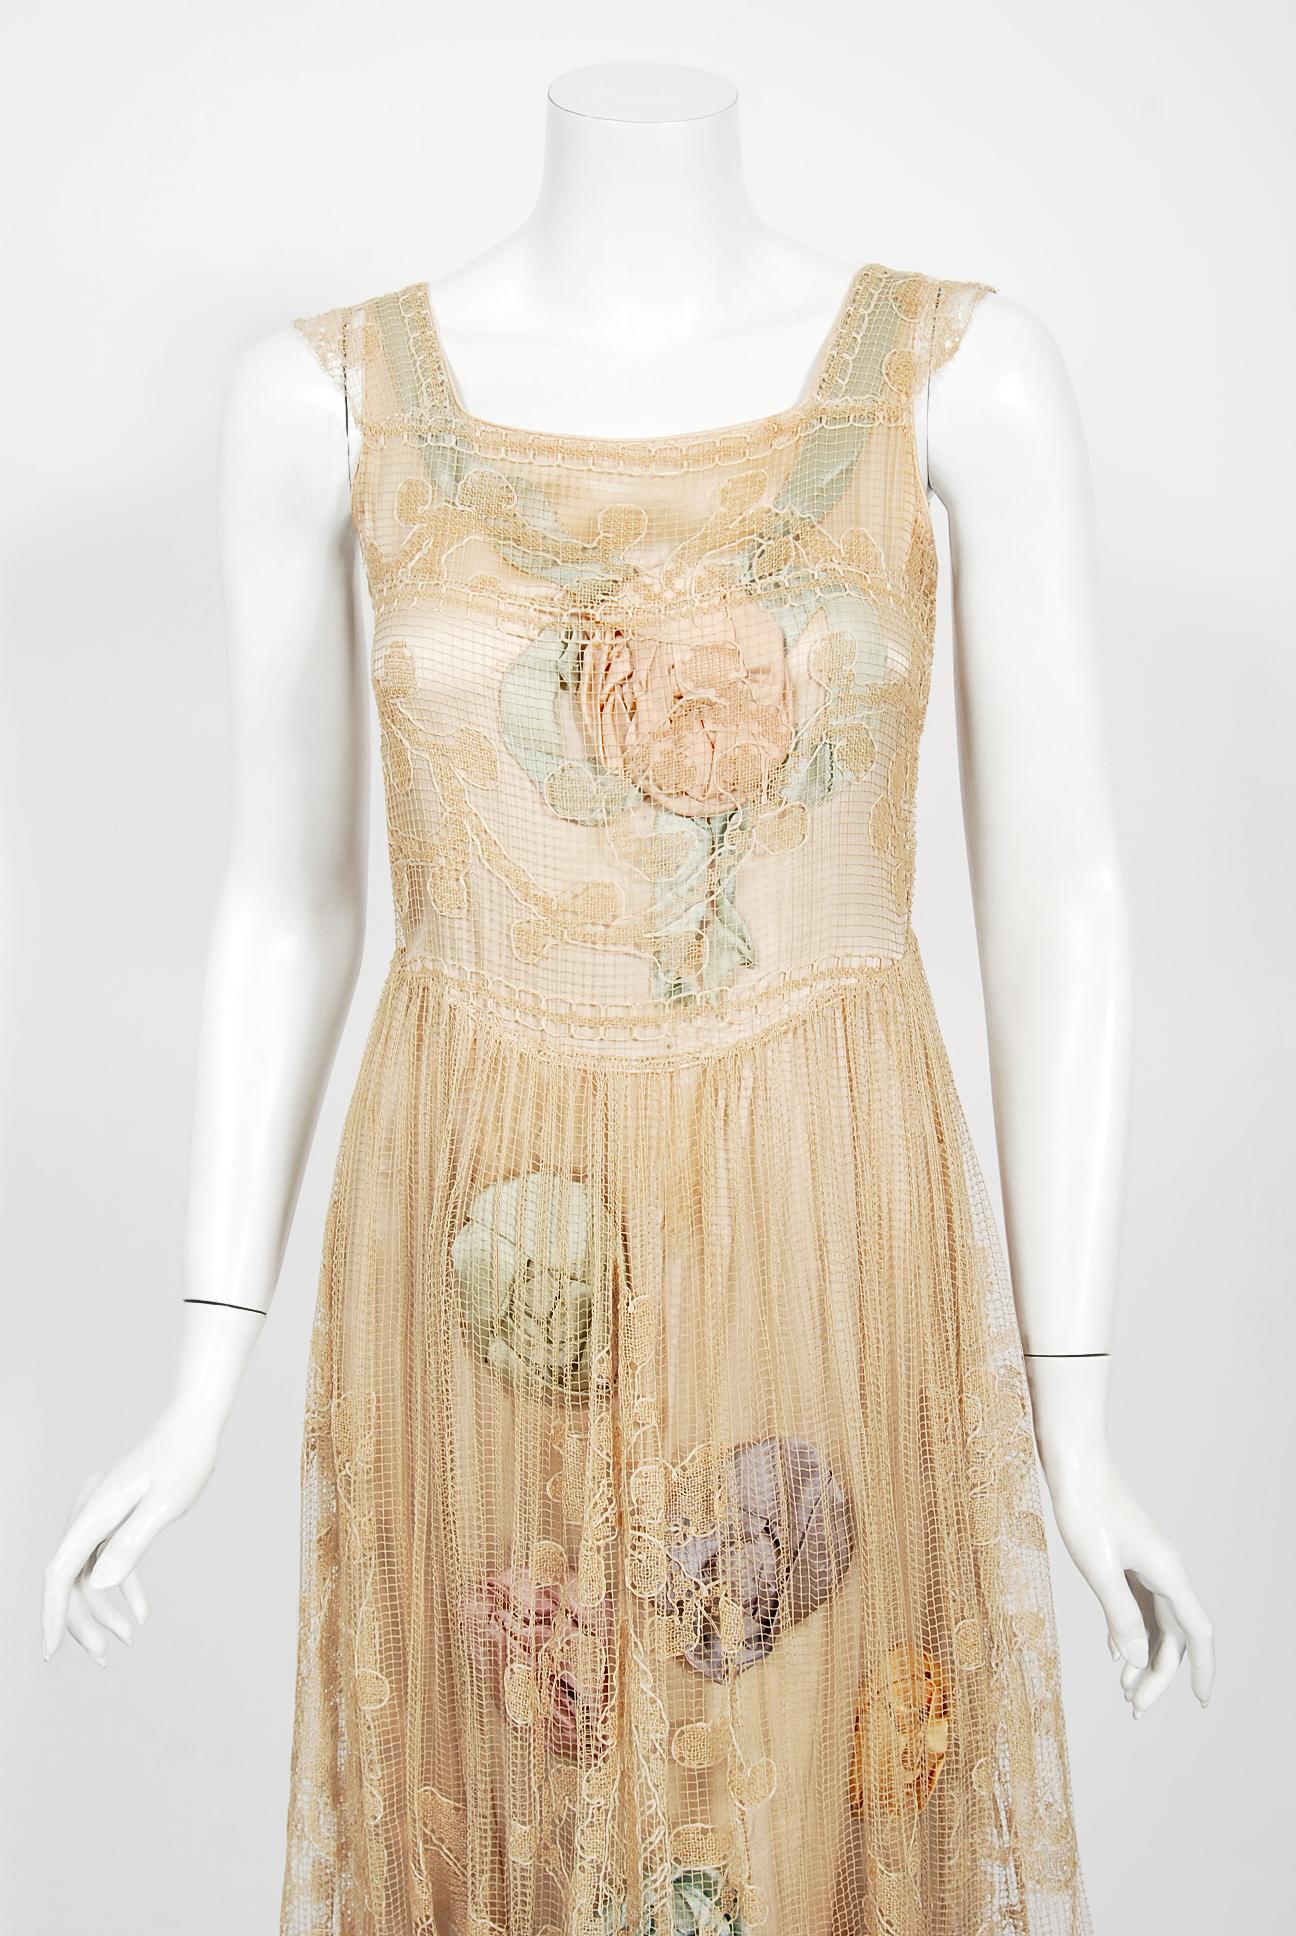 Ein atemberaubendes Brauttanzkleid in Museumsqualität aus der Mitte der 1920er Jahre. Zwei Lagen sind so konzipiert, dass sie sich gegenseitig ergänzen: eine äußere Lage aus feiner Filet-Spitze mit Blattmuster über einer ecrufarbenen